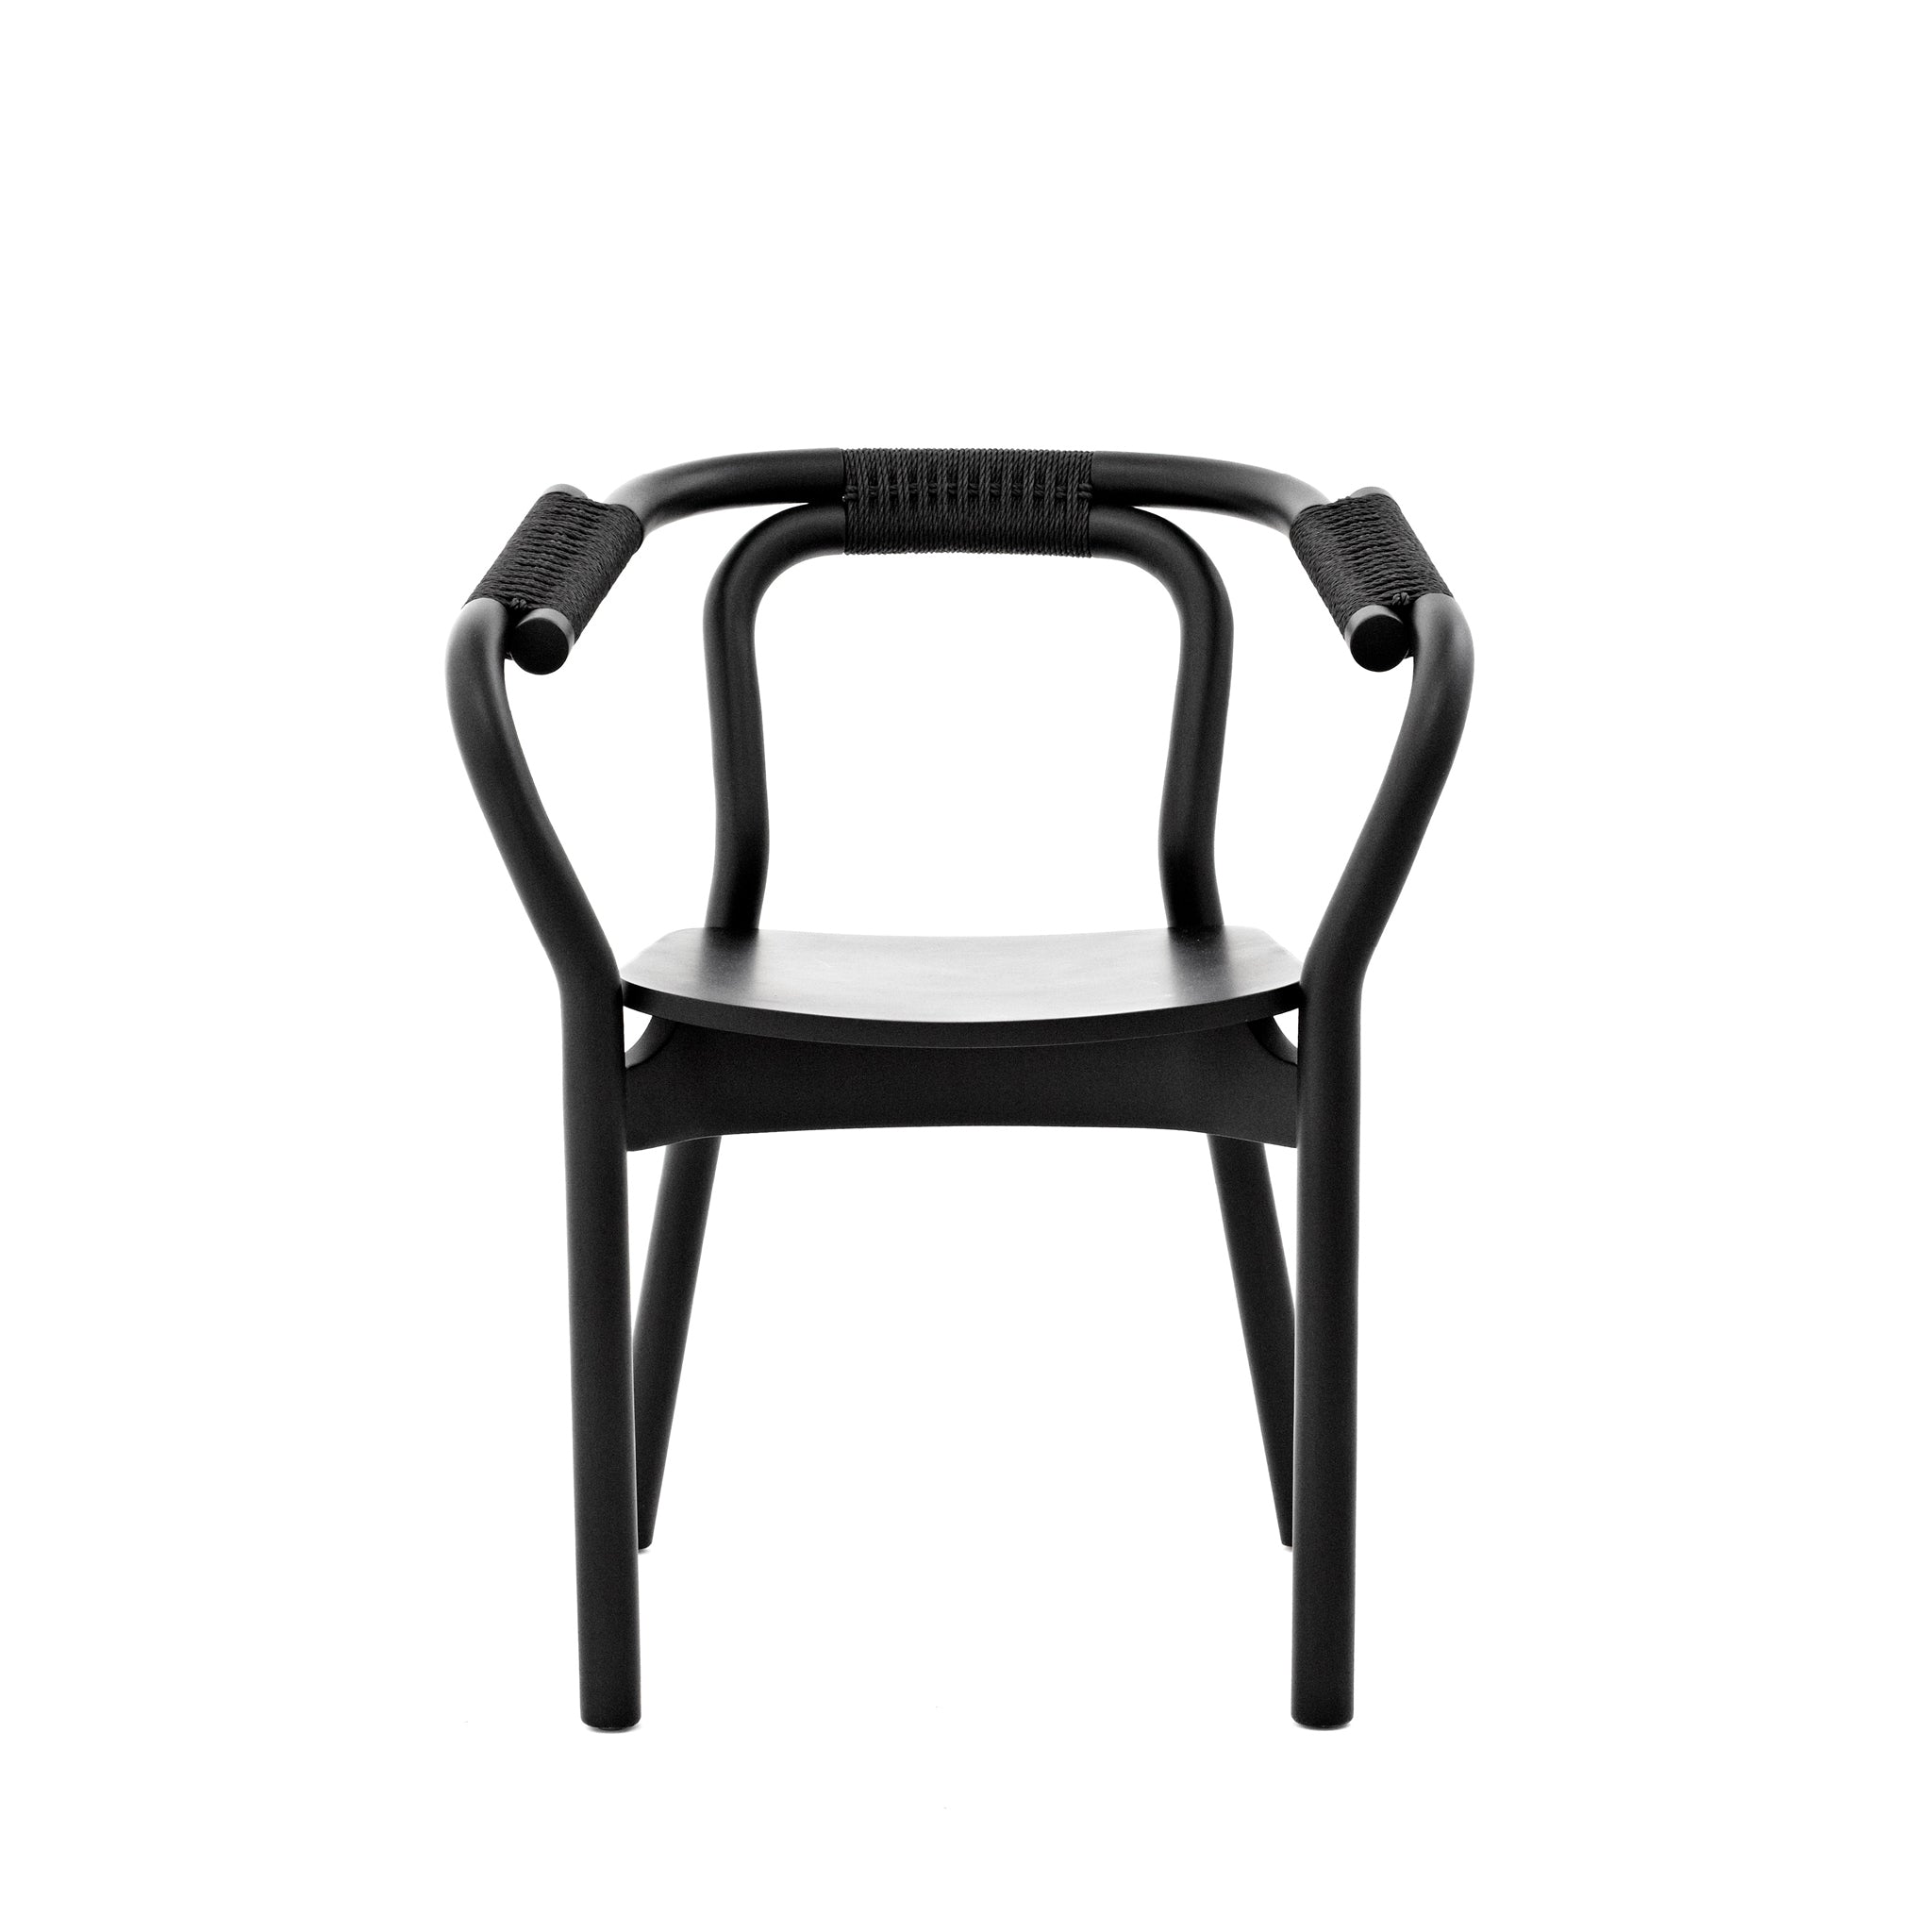 Knot Chair by Normann Copenhagen